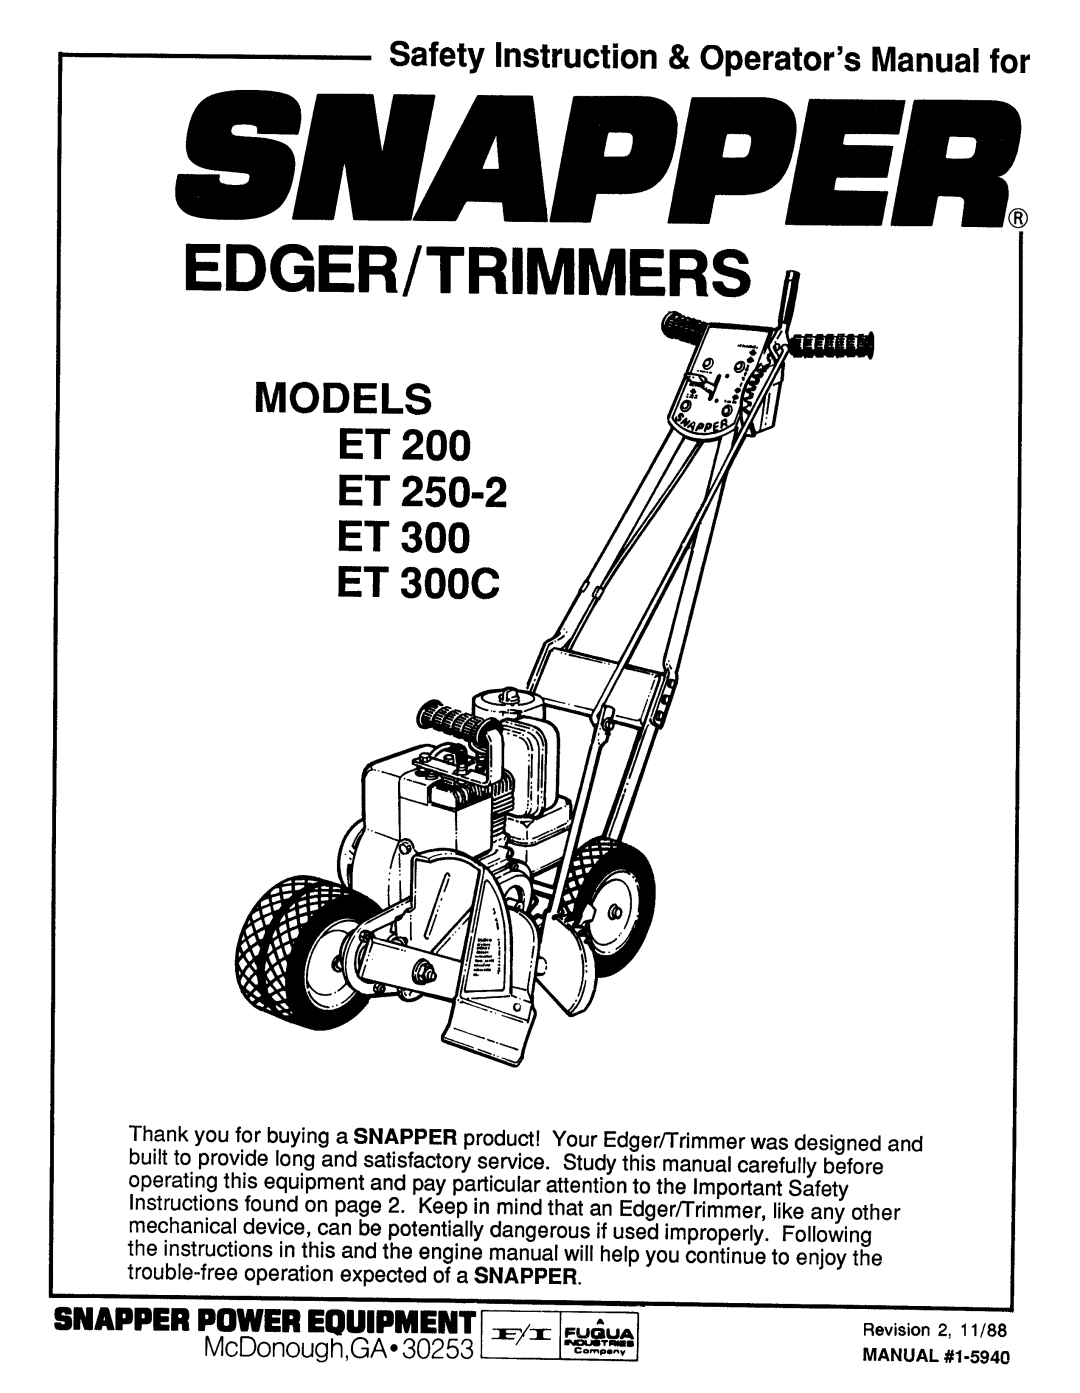 Snapper ET 200, ET 250-2, ET 300C manual 